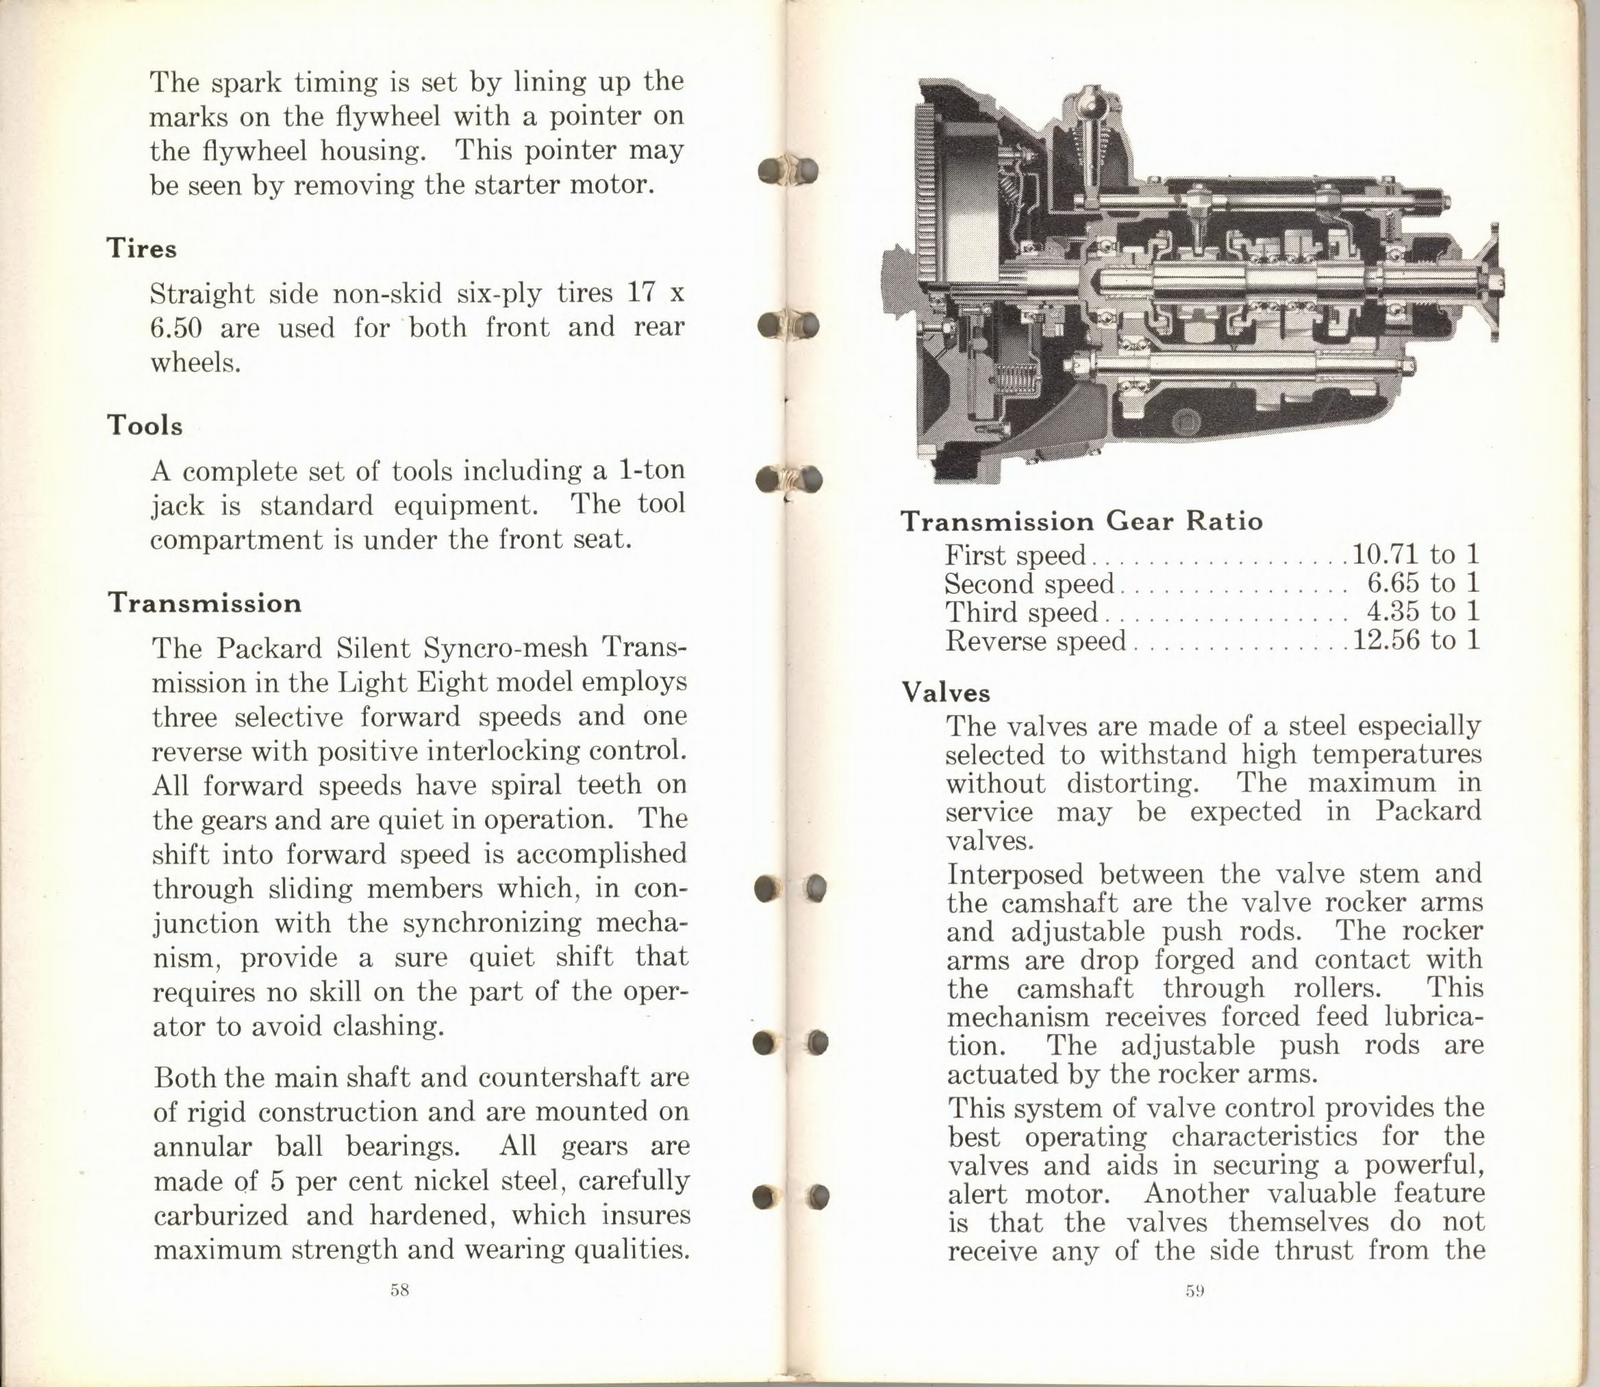 n_1932 Packard Light Eight Facts Book-58-59.jpg